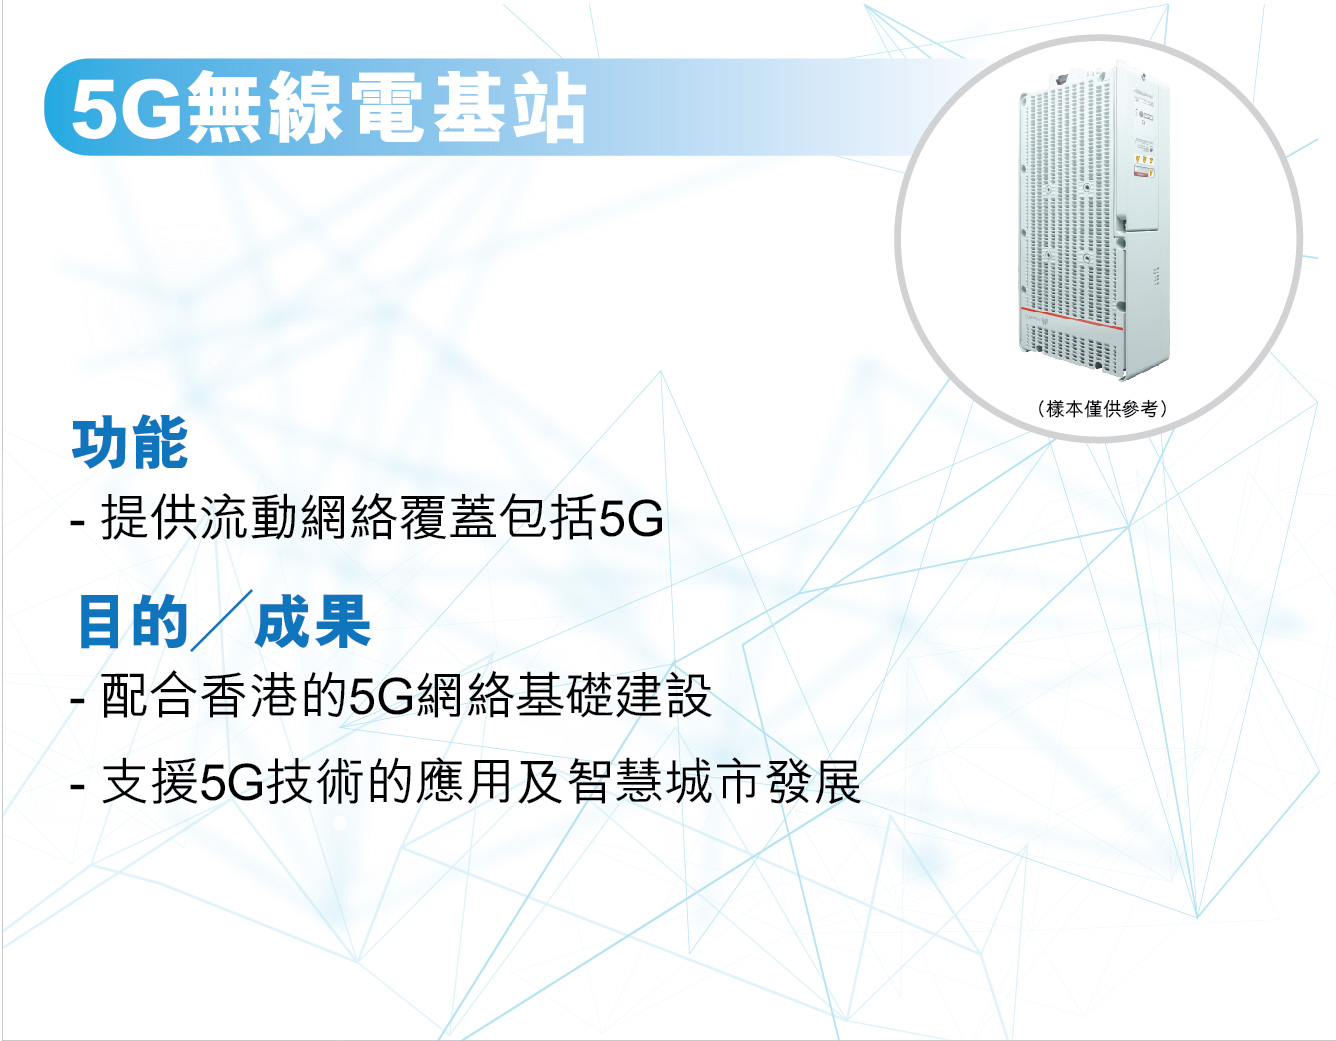 5G無線電基站，
					功能 —
					提供流動網絡覆蓋包括5G。

					目的╱成果 —
					配合香港的5G網絡基礎建設。
					支援5G技術的應用及智慧城市發展。